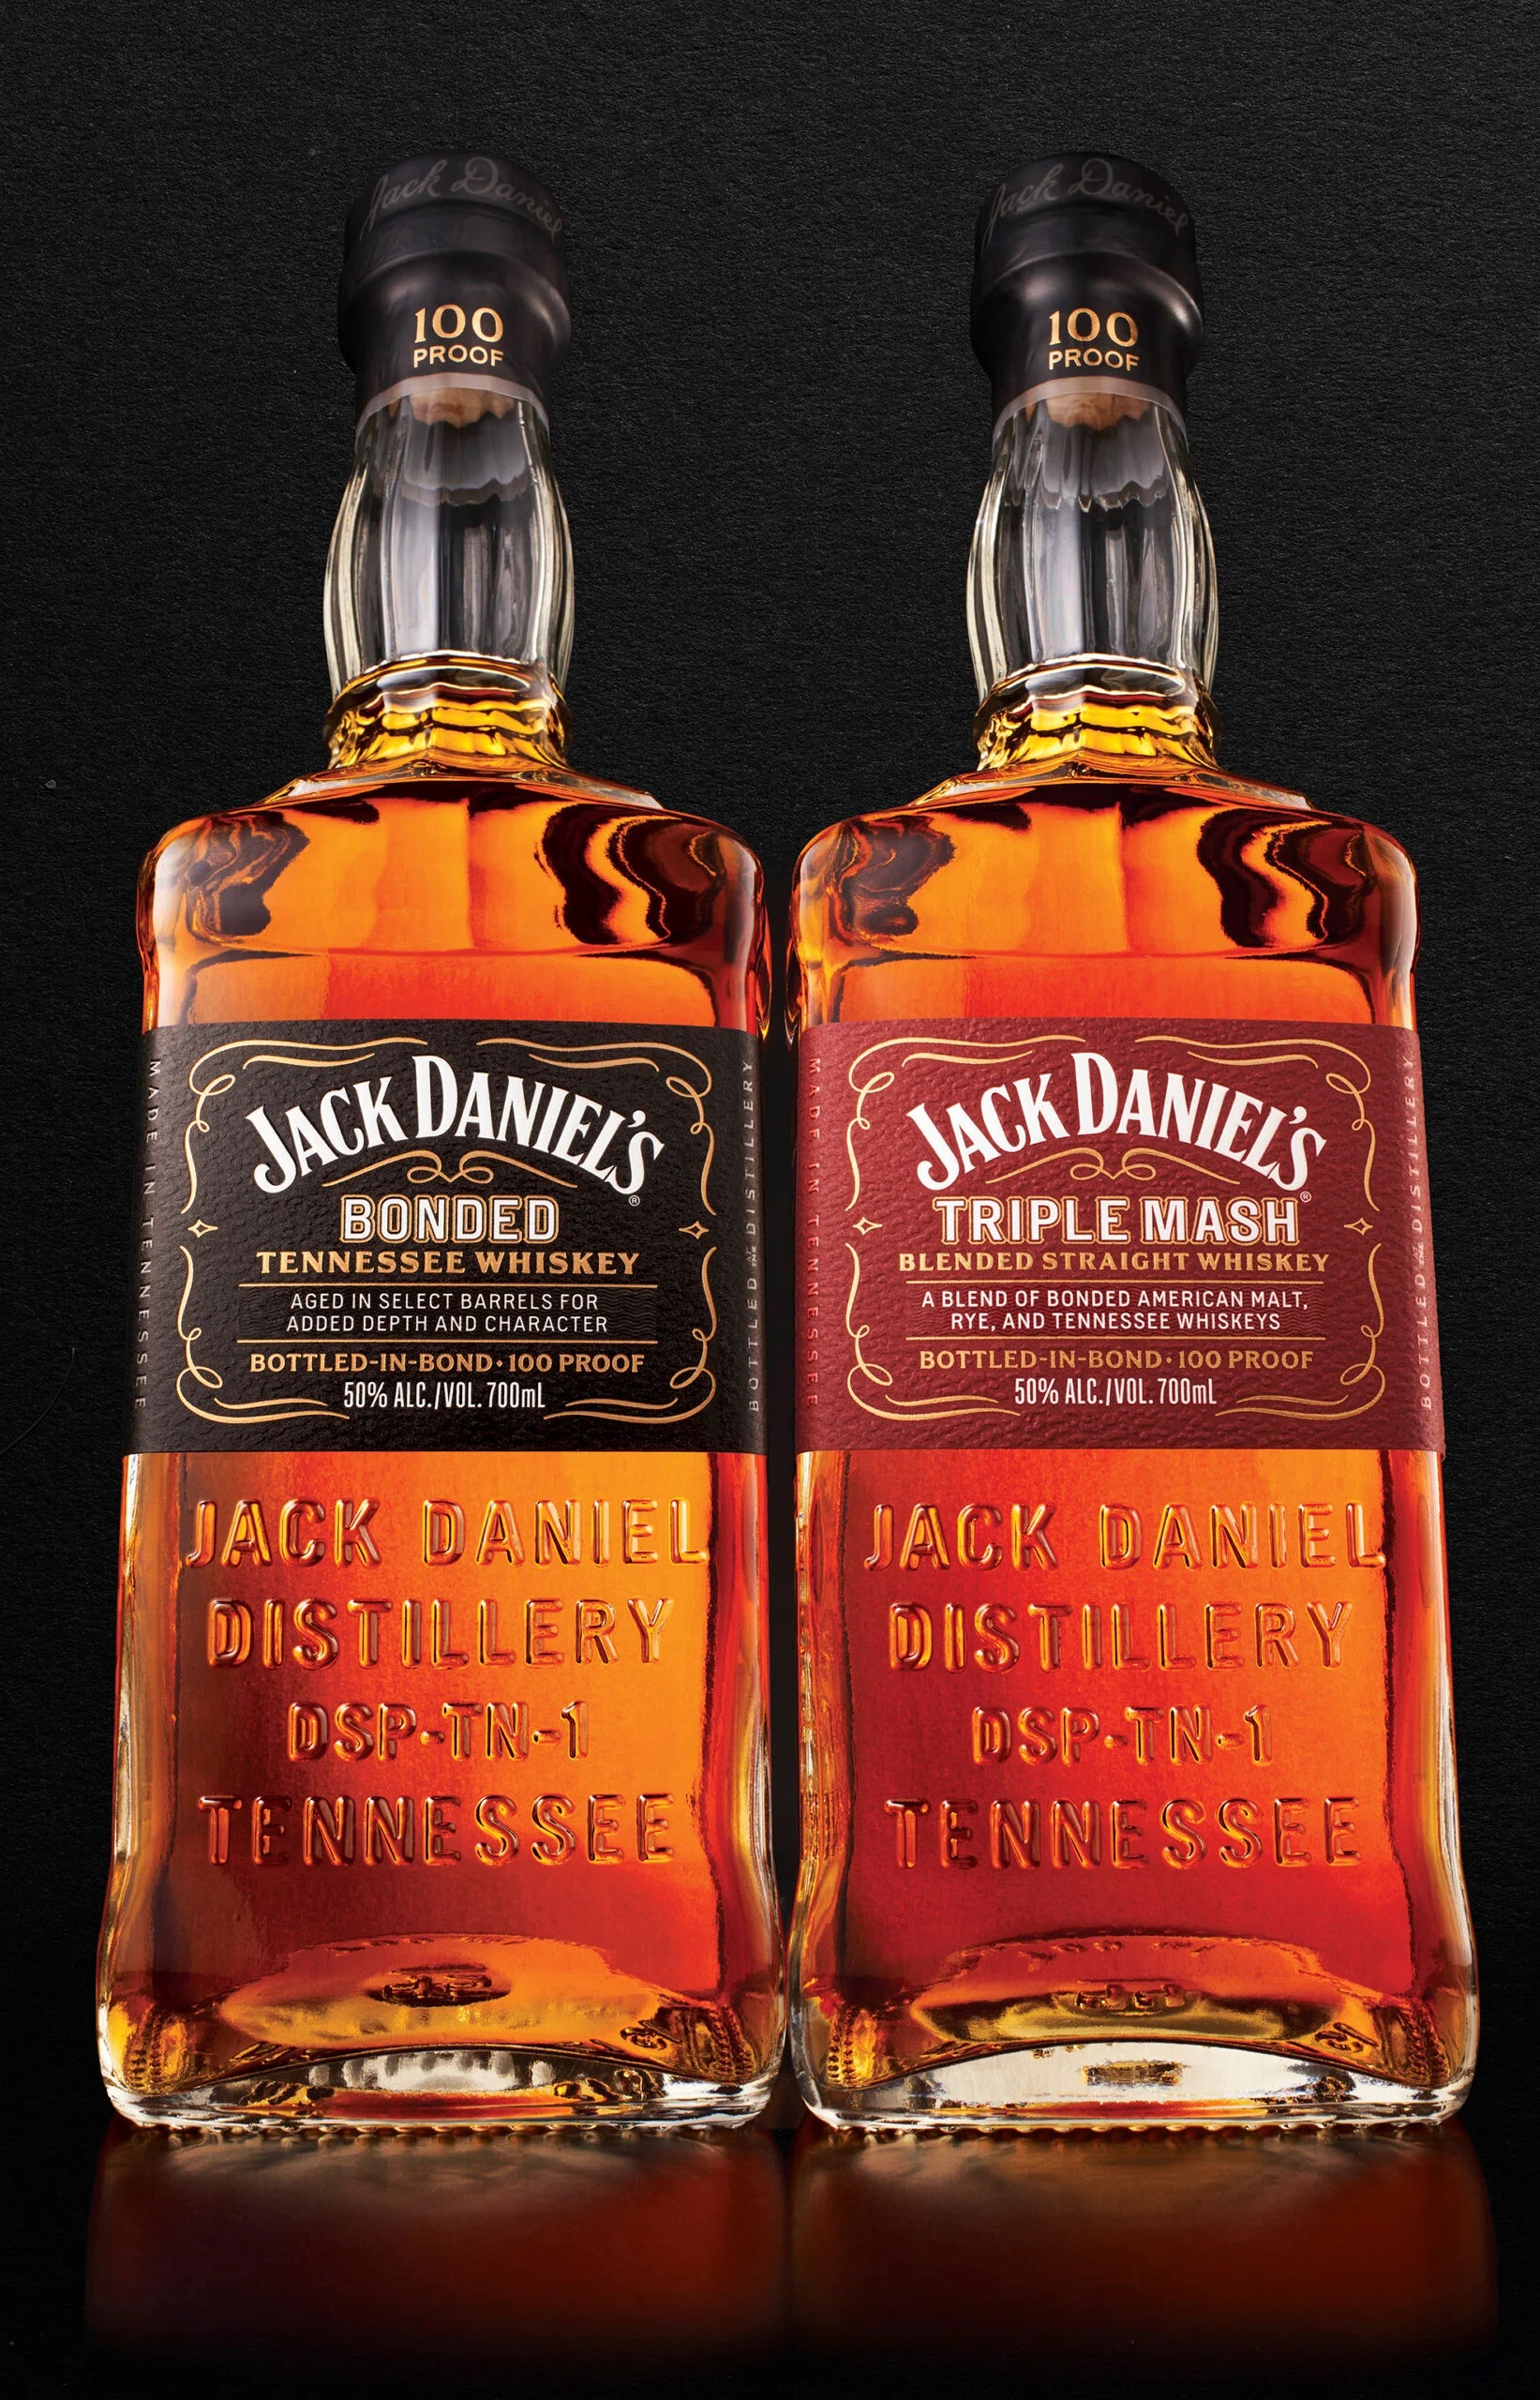 Image of 2 Jack Daniel's bottles